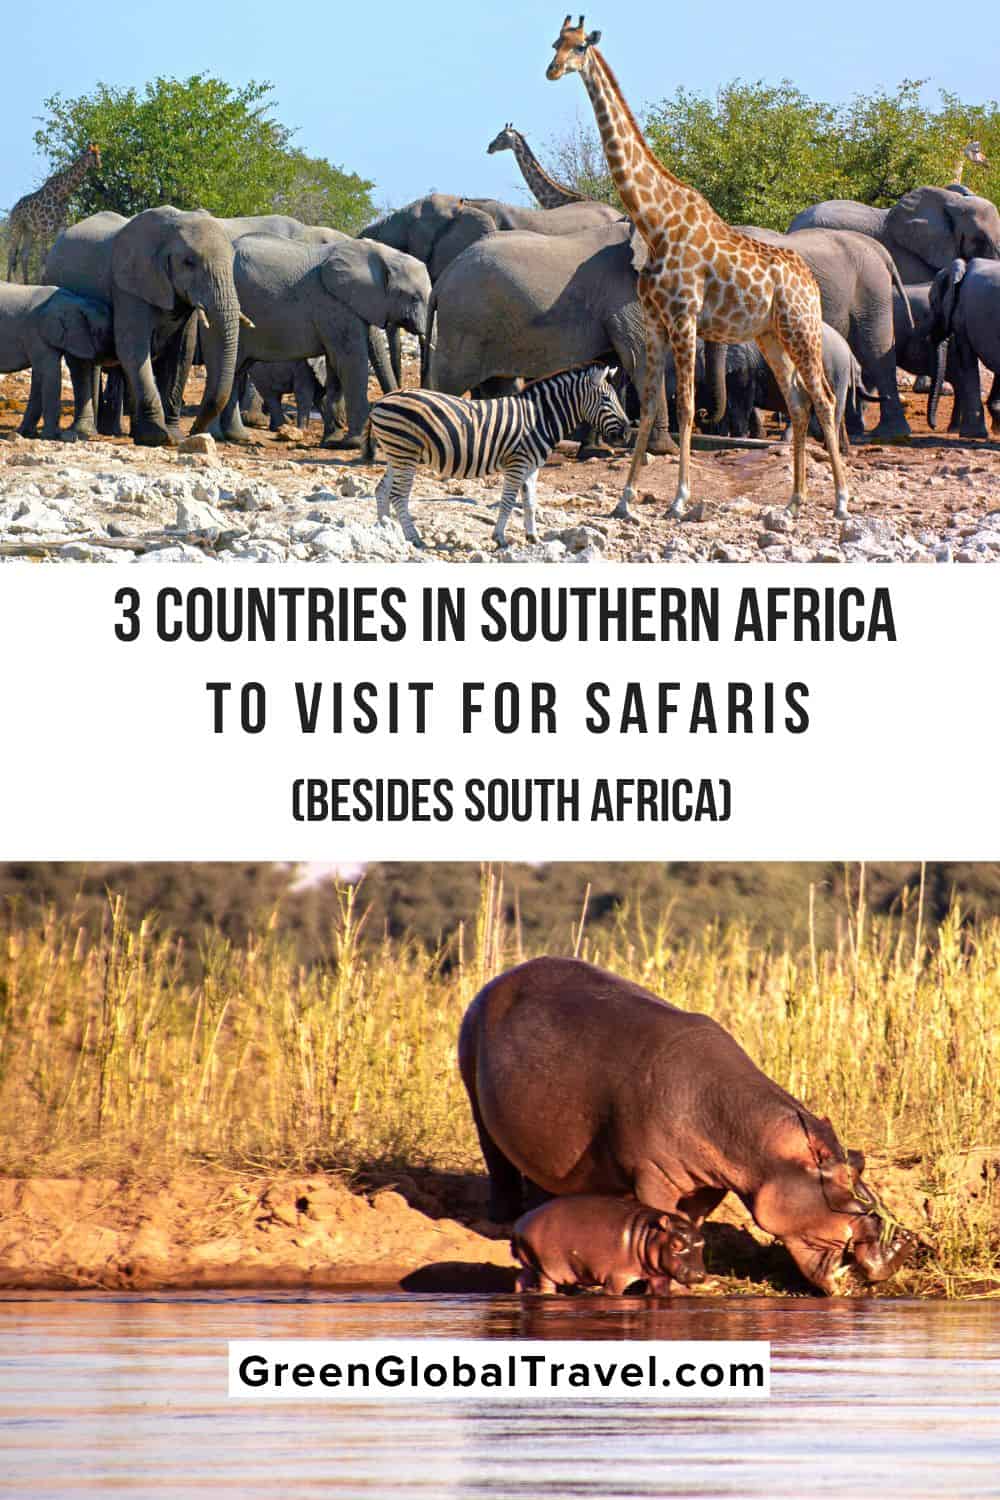 3 pays d'Afrique australe à visiter (en plus de l'Afrique du Sud) pour des safaris animaliers.  Le Botswana, la Namibie et la Zambie sont toutes des destinations en plein essor pour un safari en Afrique australe.  |  pays d'afrique du sud |  meilleurs pays d'afrique |  pays d'afrique australe |  région afrique du sud |  pays d'afrique australe |  pays d'afrique du sud |  meilleurs pays à visiter en afrique |  pays d'afrique australe |  meilleurs pays pour les safaris en afrique |  région afrique australe |